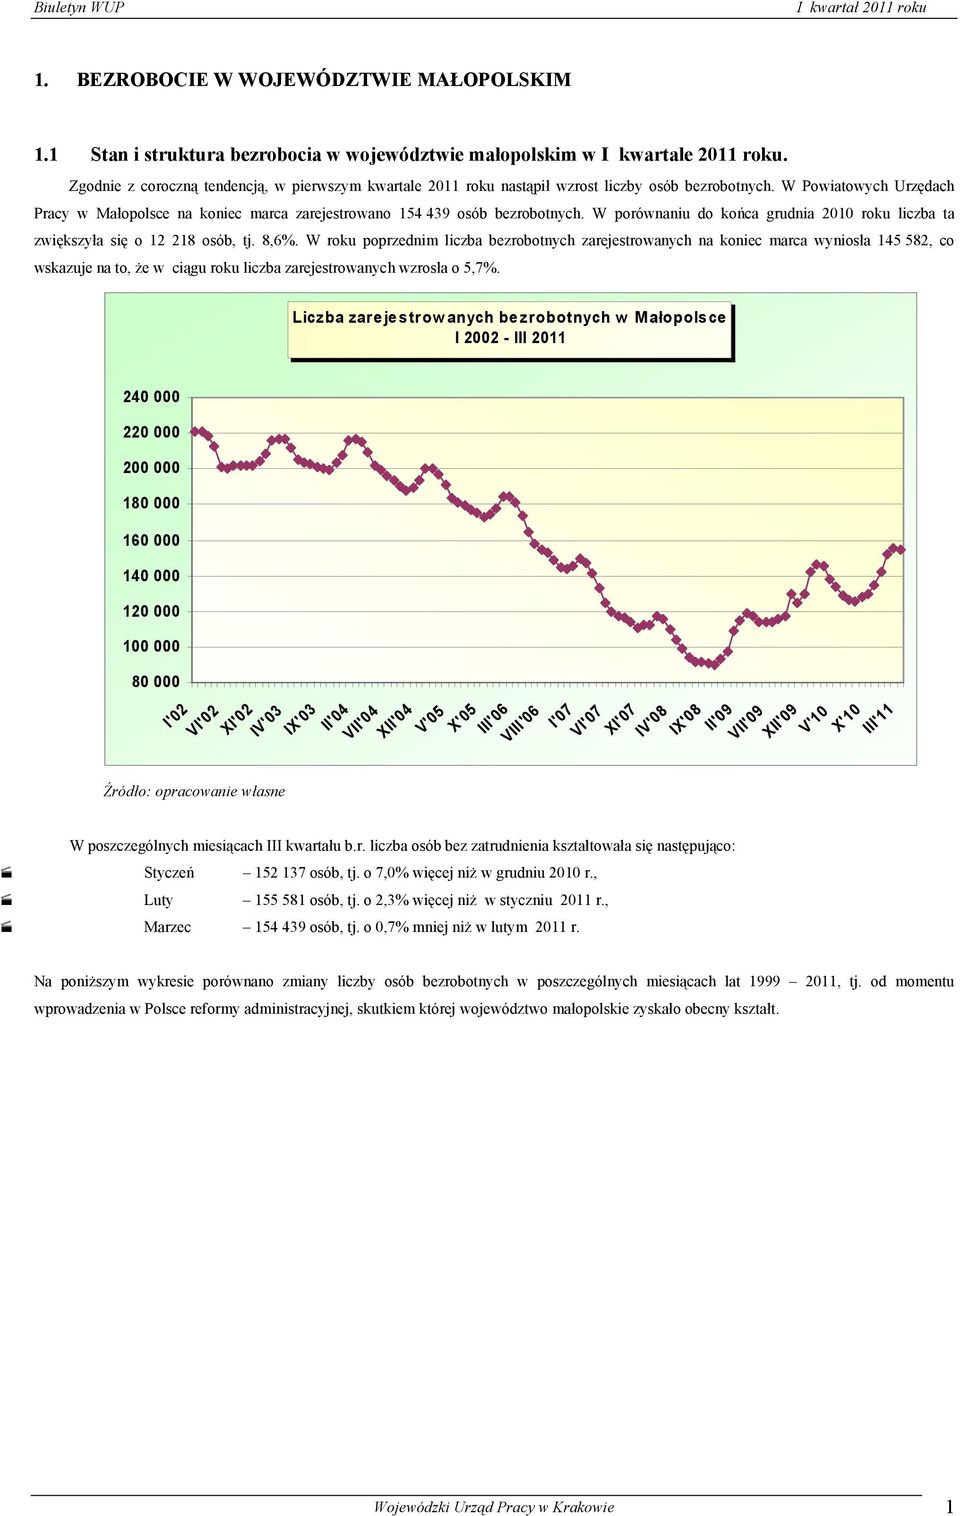 W Powiatowych Urzędach Pracy w Małopolsce na koniec marca zarejestrowano 154 439 osób bezrobotnych. W porównaniu do końca grudnia 2010 roku liczba ta zwiększyła się o 12 218 osób, tj. 8,6%.